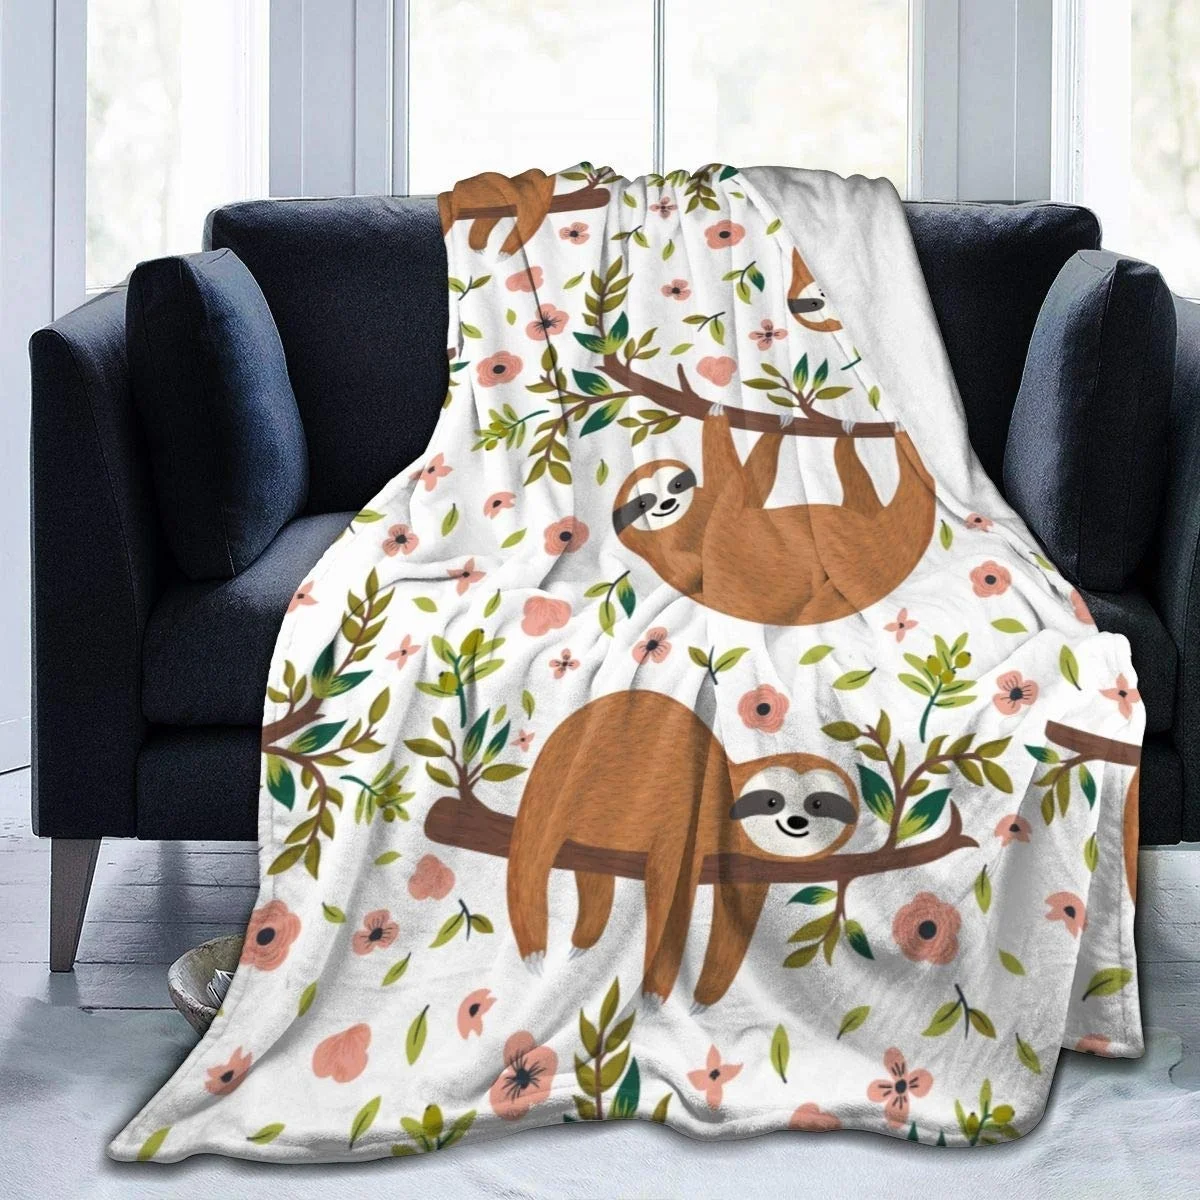 

Плюшевое одеяло в виде панды, Фланелевое Флисовое одеяло, мягкое теплое пушистое покрывало, для детей и взрослых, для кроватки, кровати, крес...